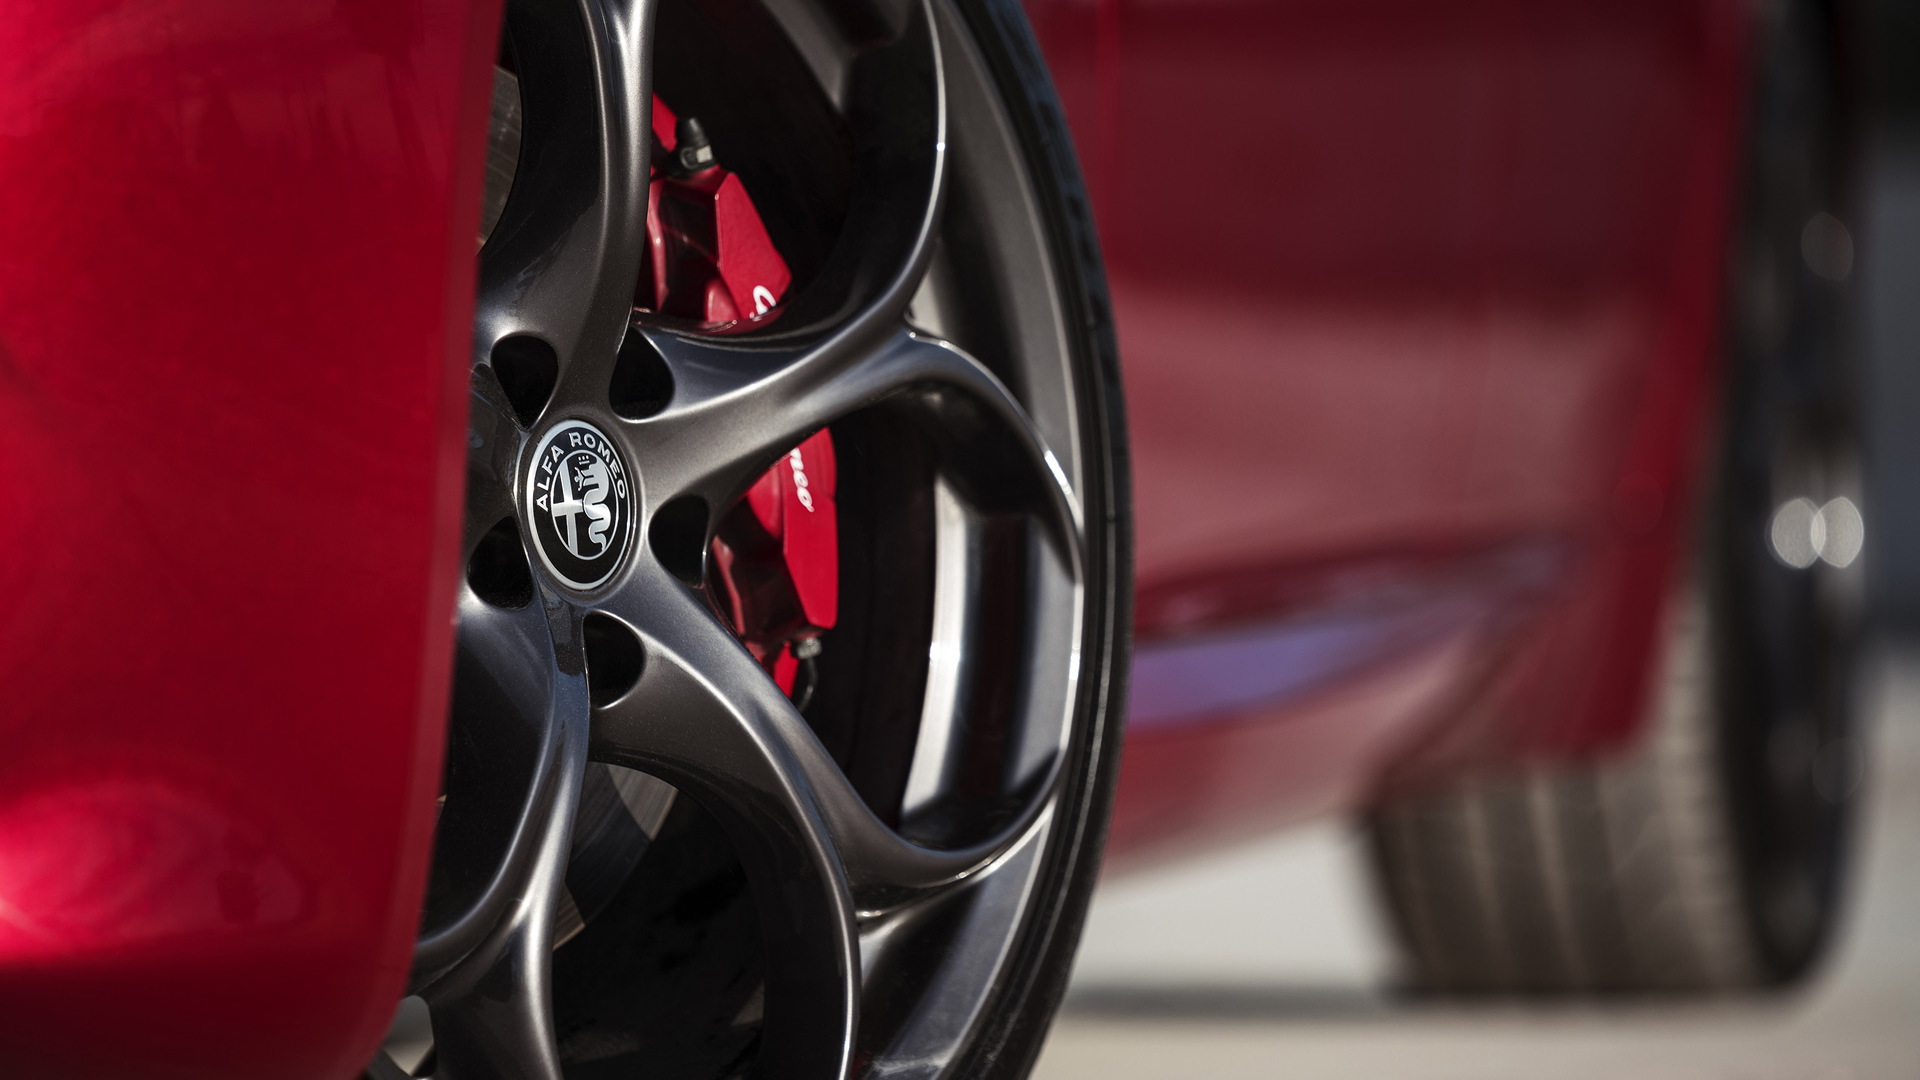 2019 Alfa Romeo Giulia equipped with Nero Edizione package